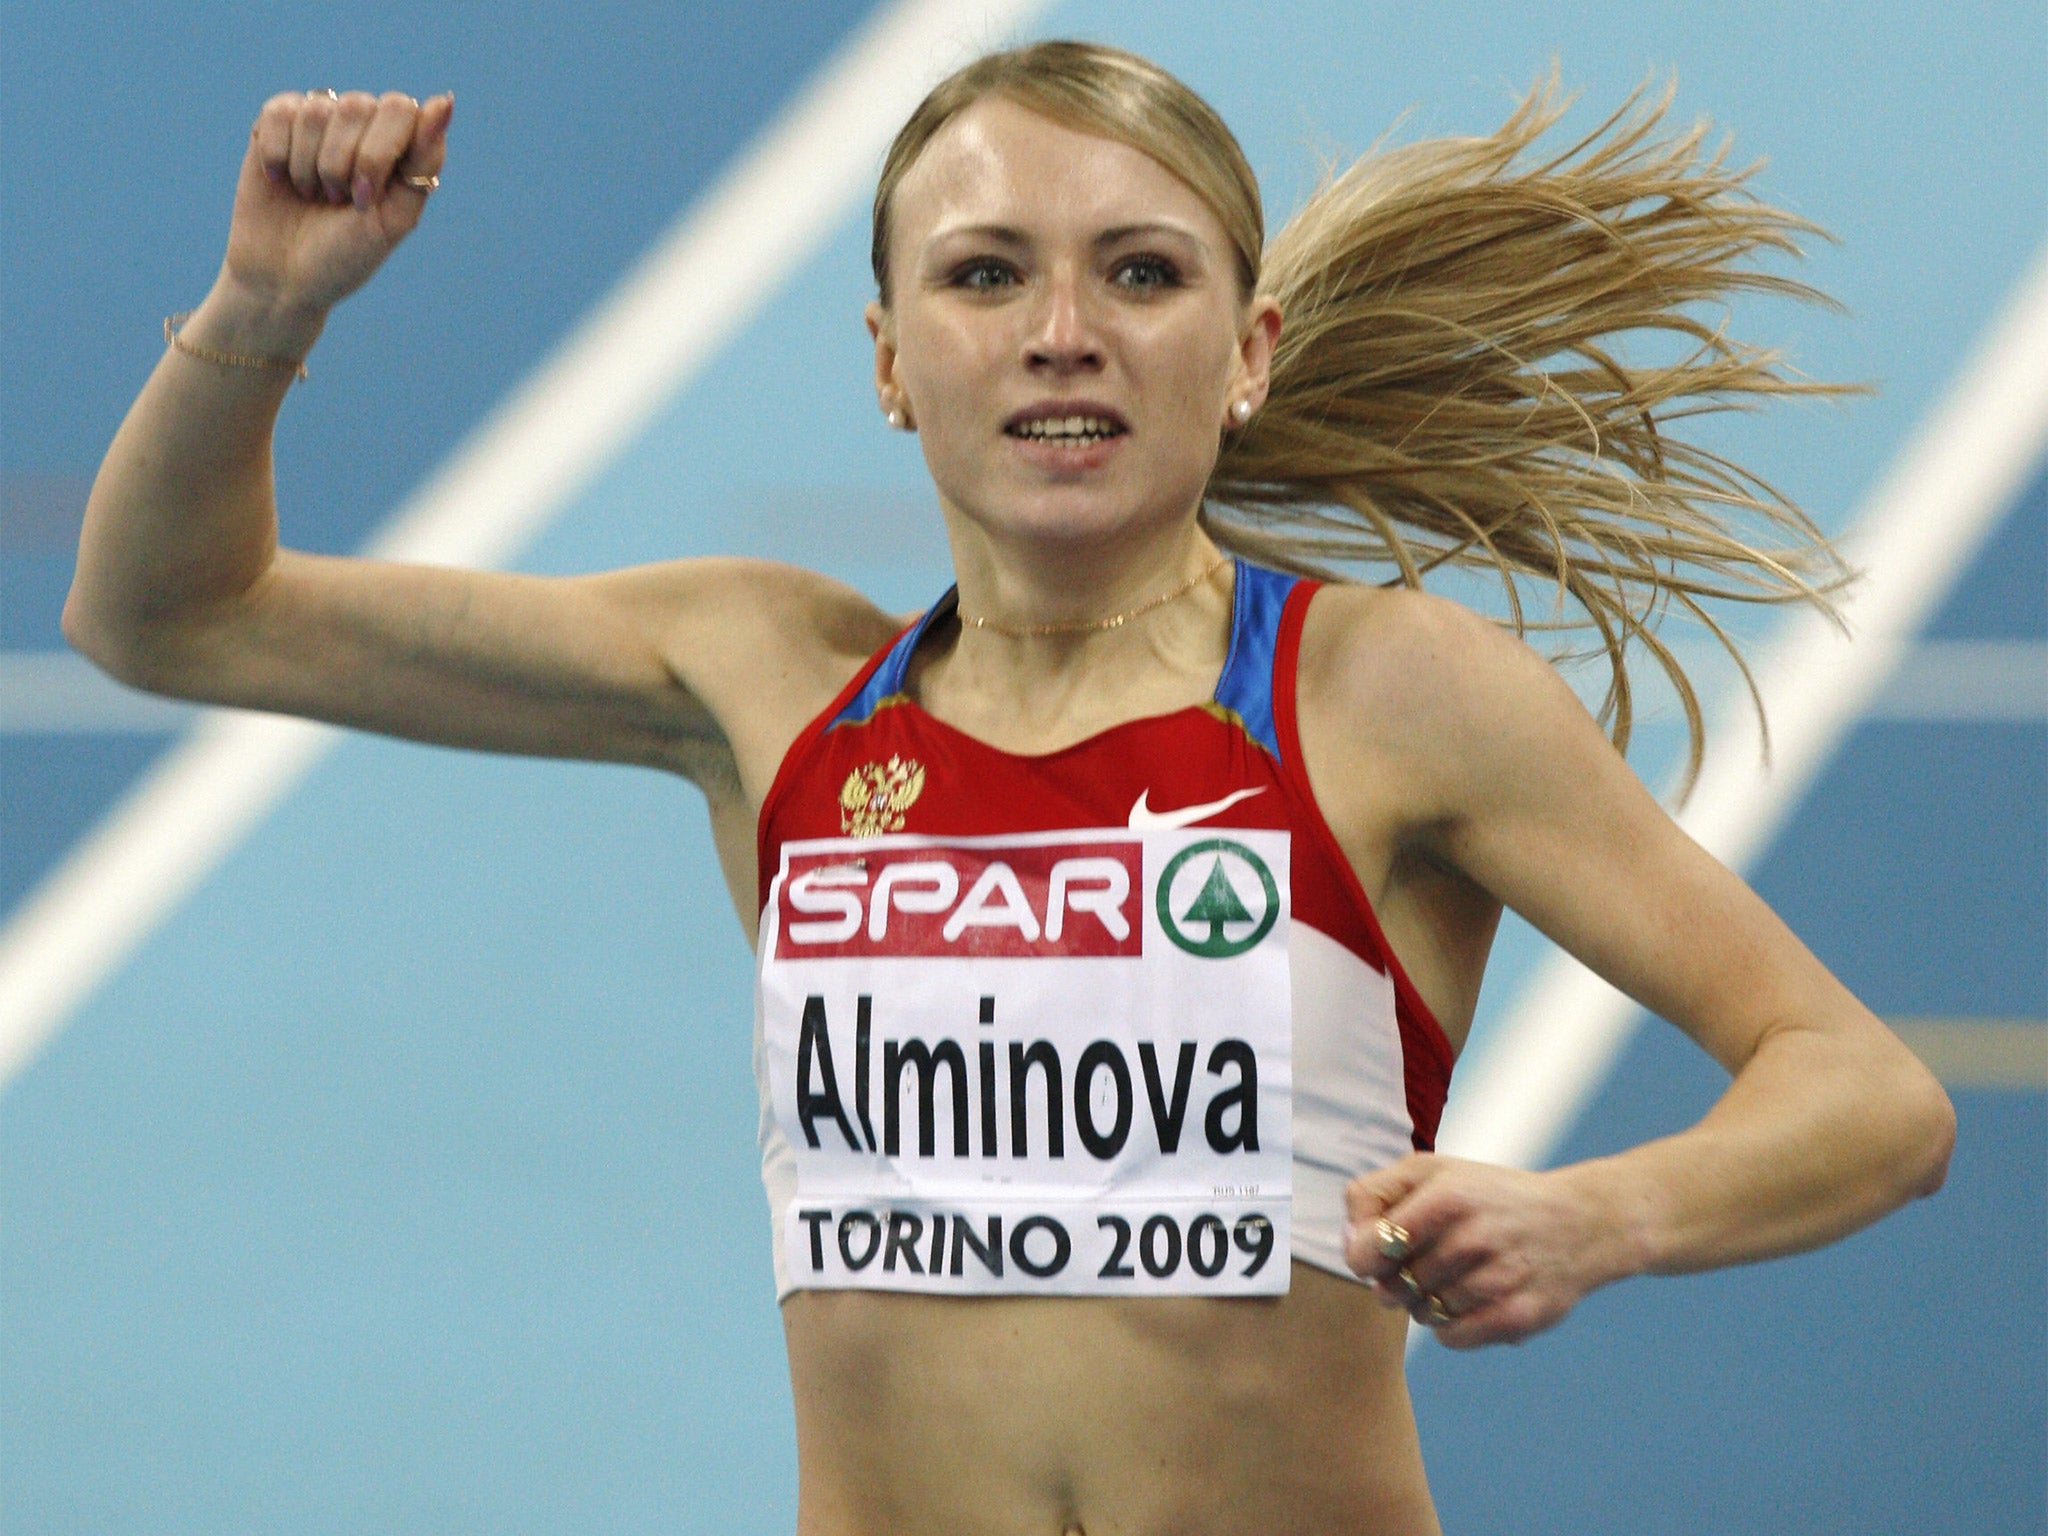 Russia’s Anna Alminova wins the 1500m in Turin in 2009 (Getty)